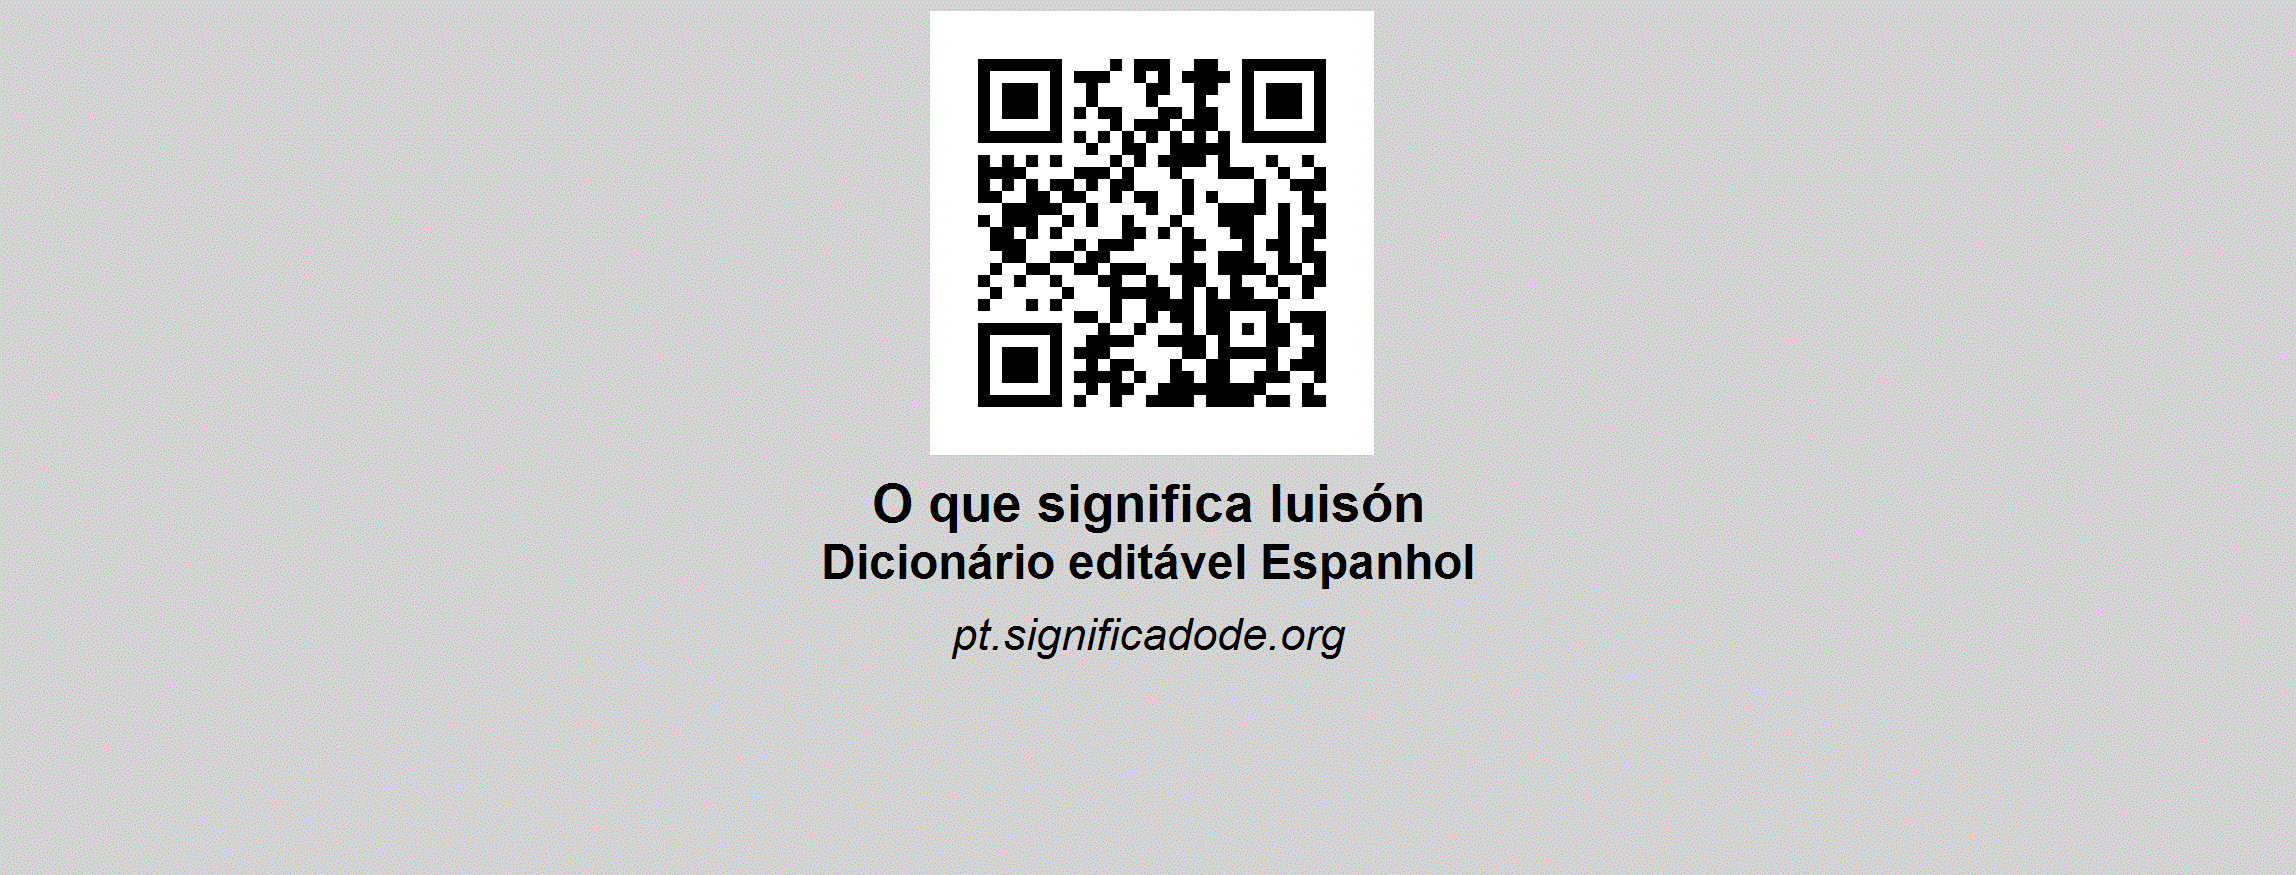 LUISÓN - Espanhol, dicionário colaborativo